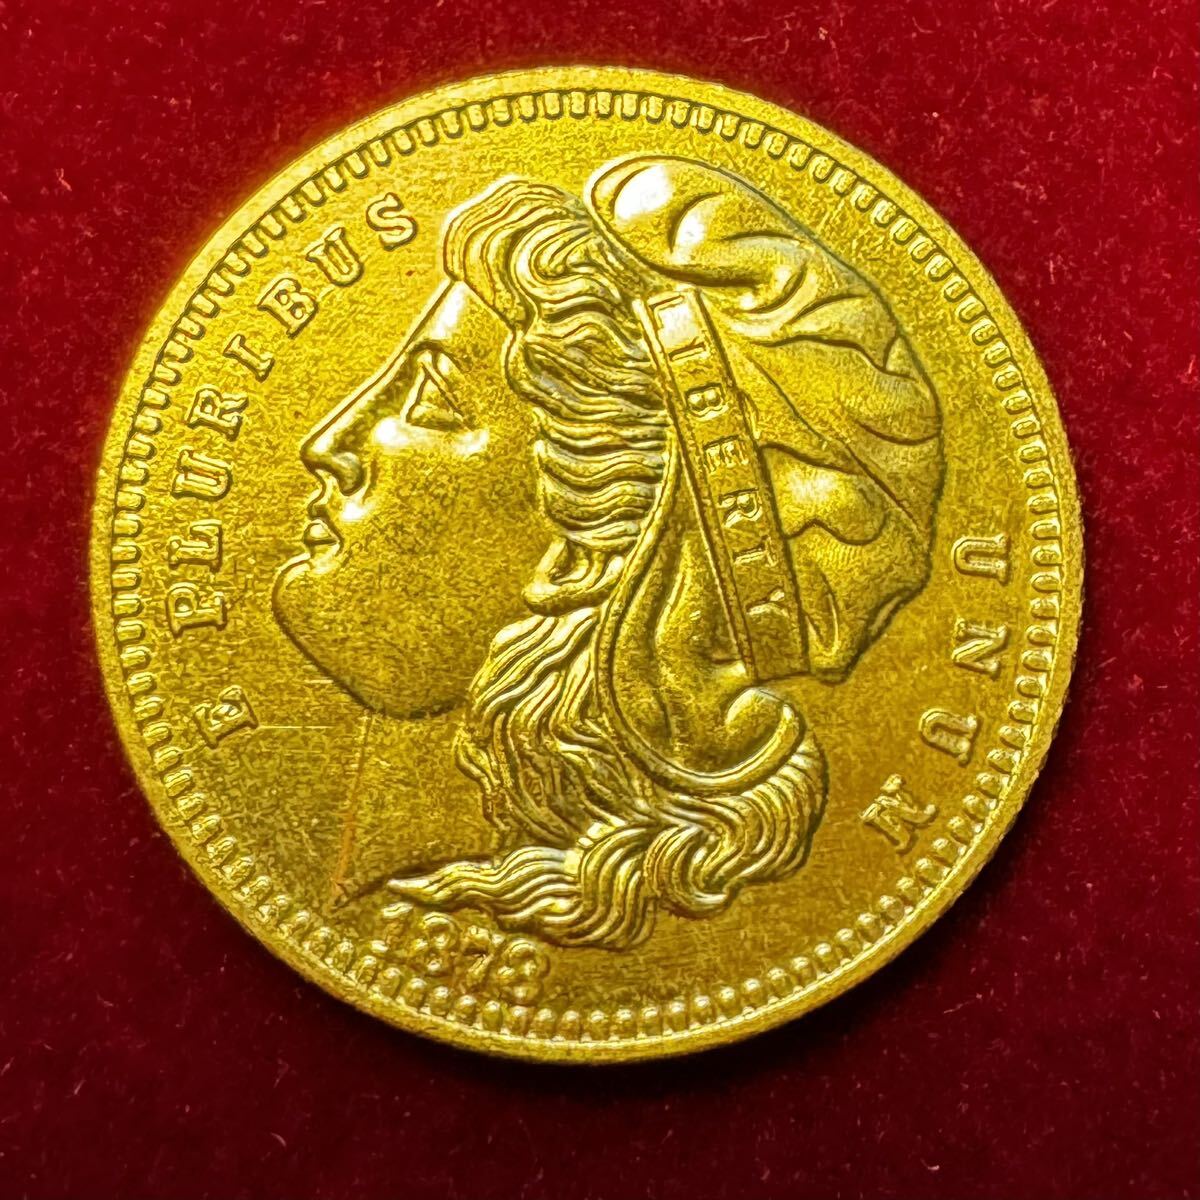 アメリカ 硬貨 古銭 自由の女神 1878年 ハクトウワシ イーグル 矢 オリーブの枝 コイン 金貨 外国古銭 海外硬貨 の画像1